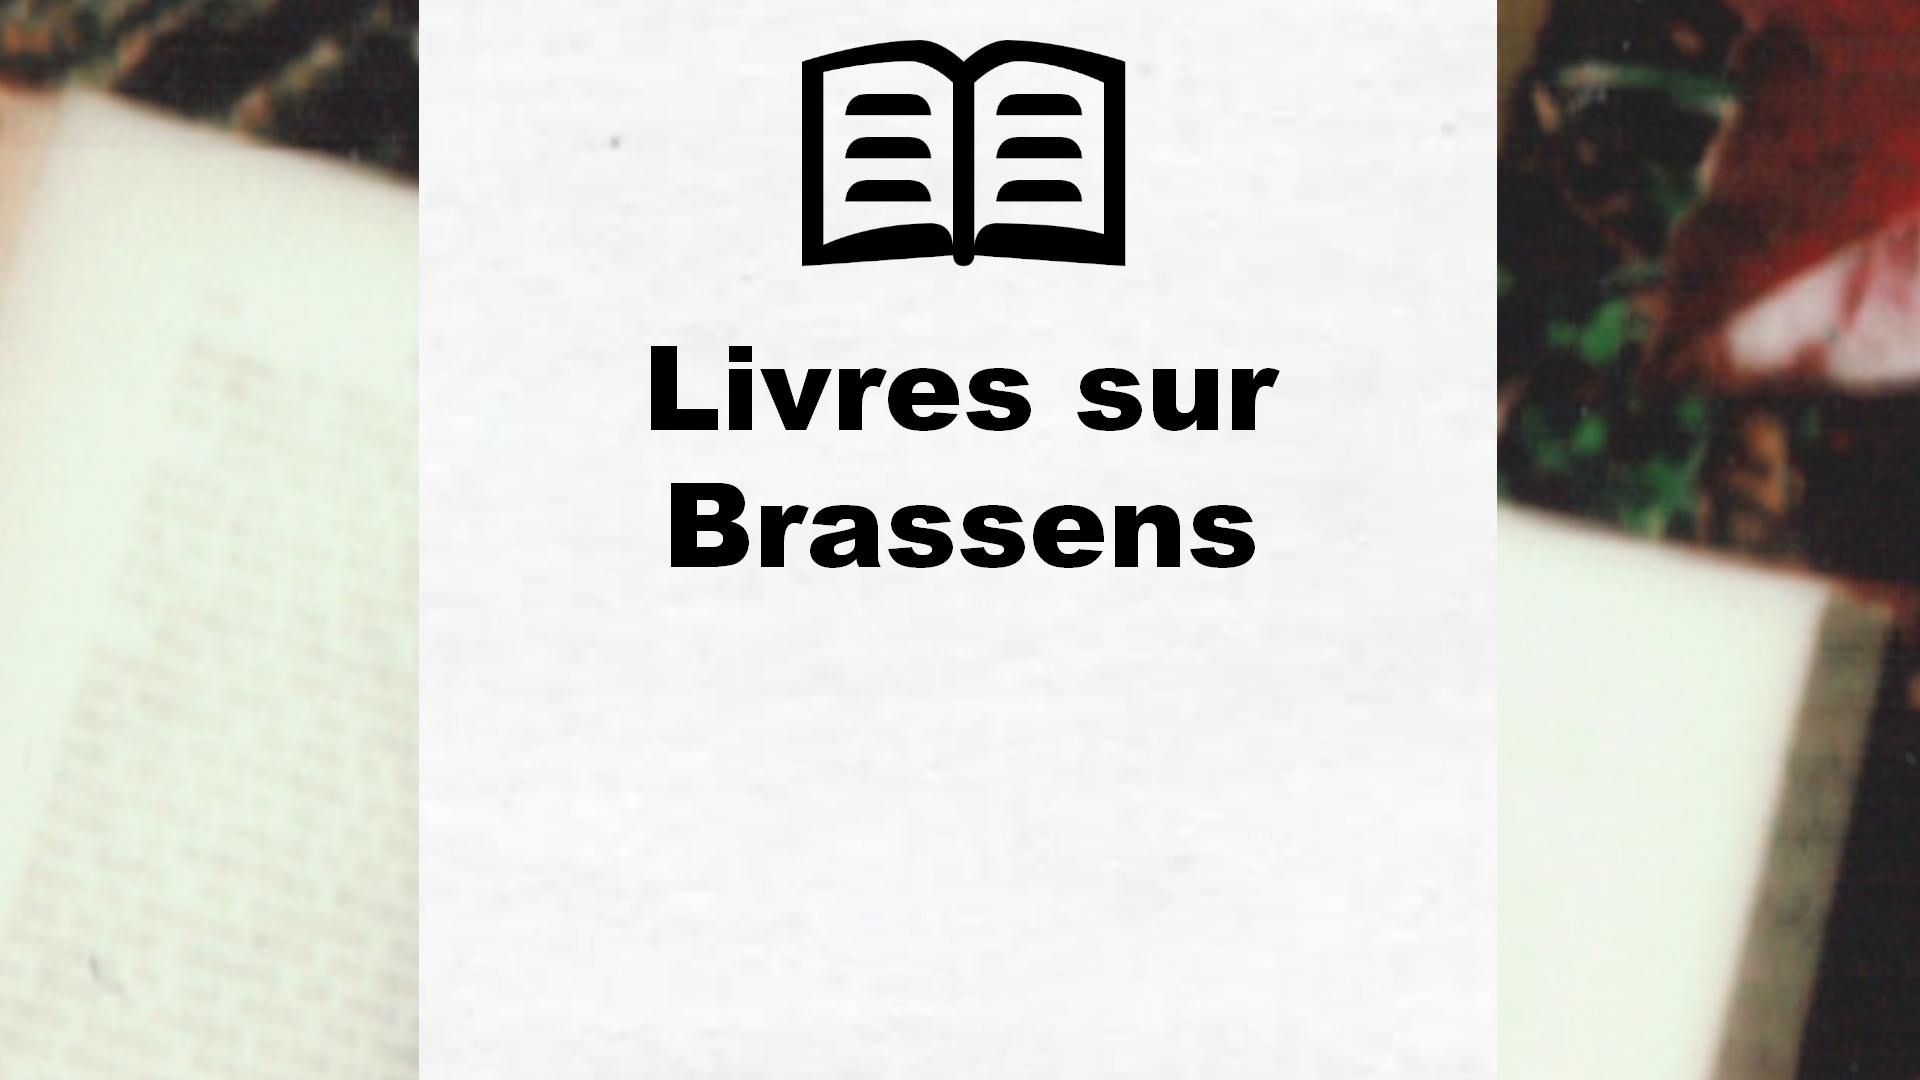 Livres sur Brassens